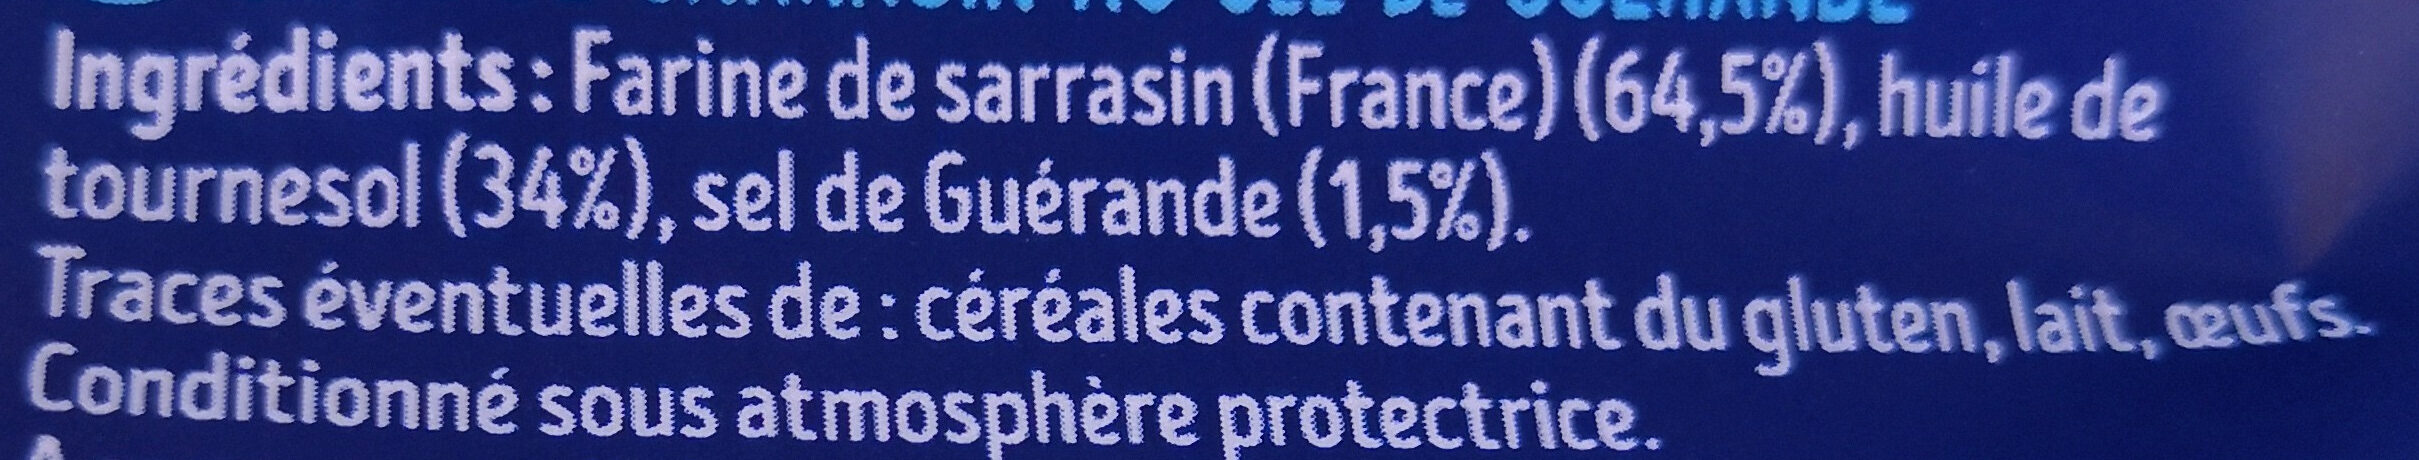 La chips de Sarrasin - Ingredienti - fr